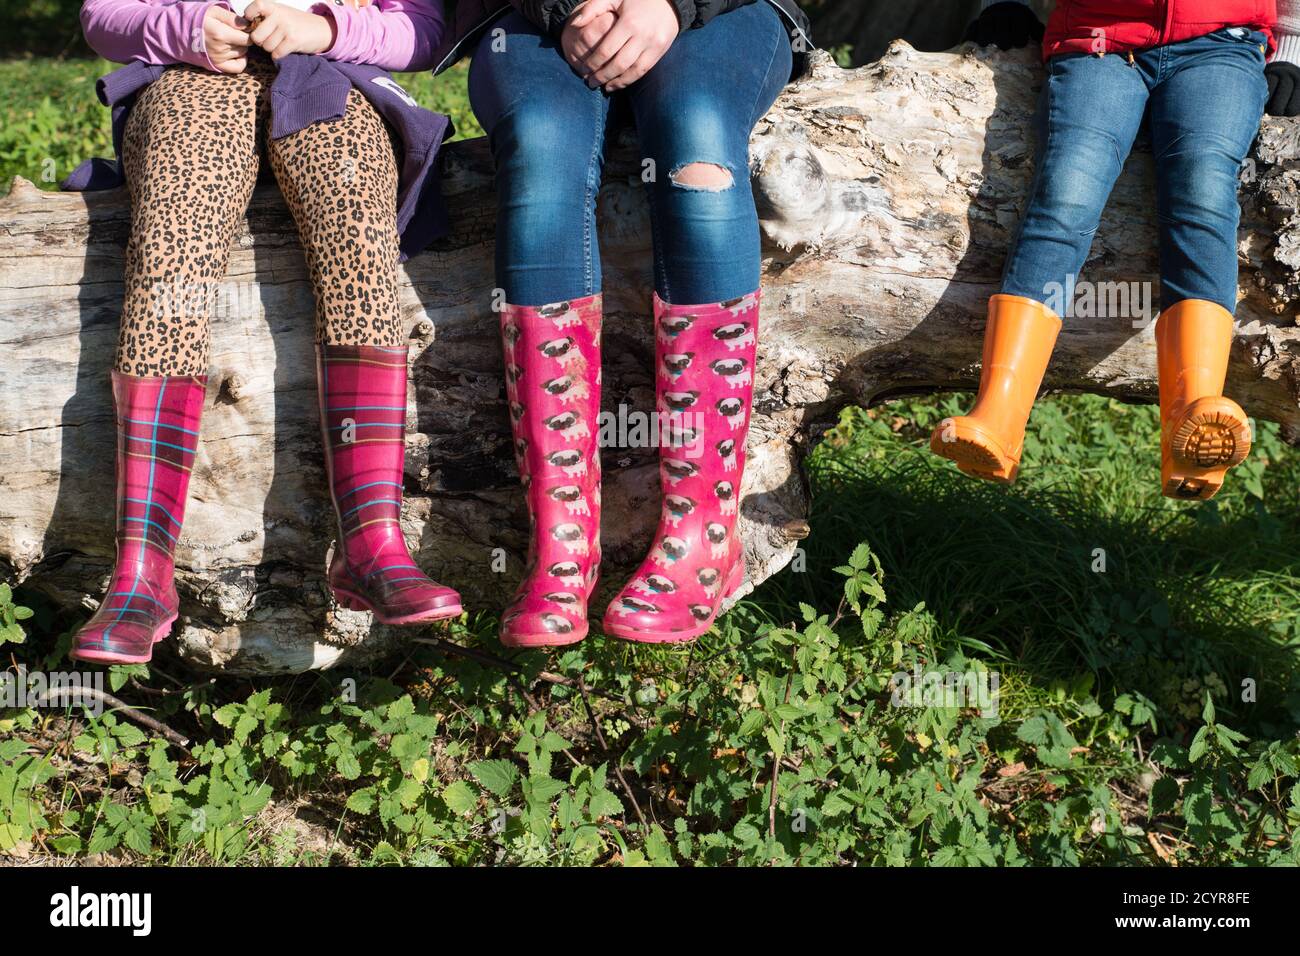 gros plan des pieds et des jambes des enfants portant des bottes wellington aux couleurs vives, assis sur un arbre tombé dans la campagne, sous le soleil d'automne Banque D'Images